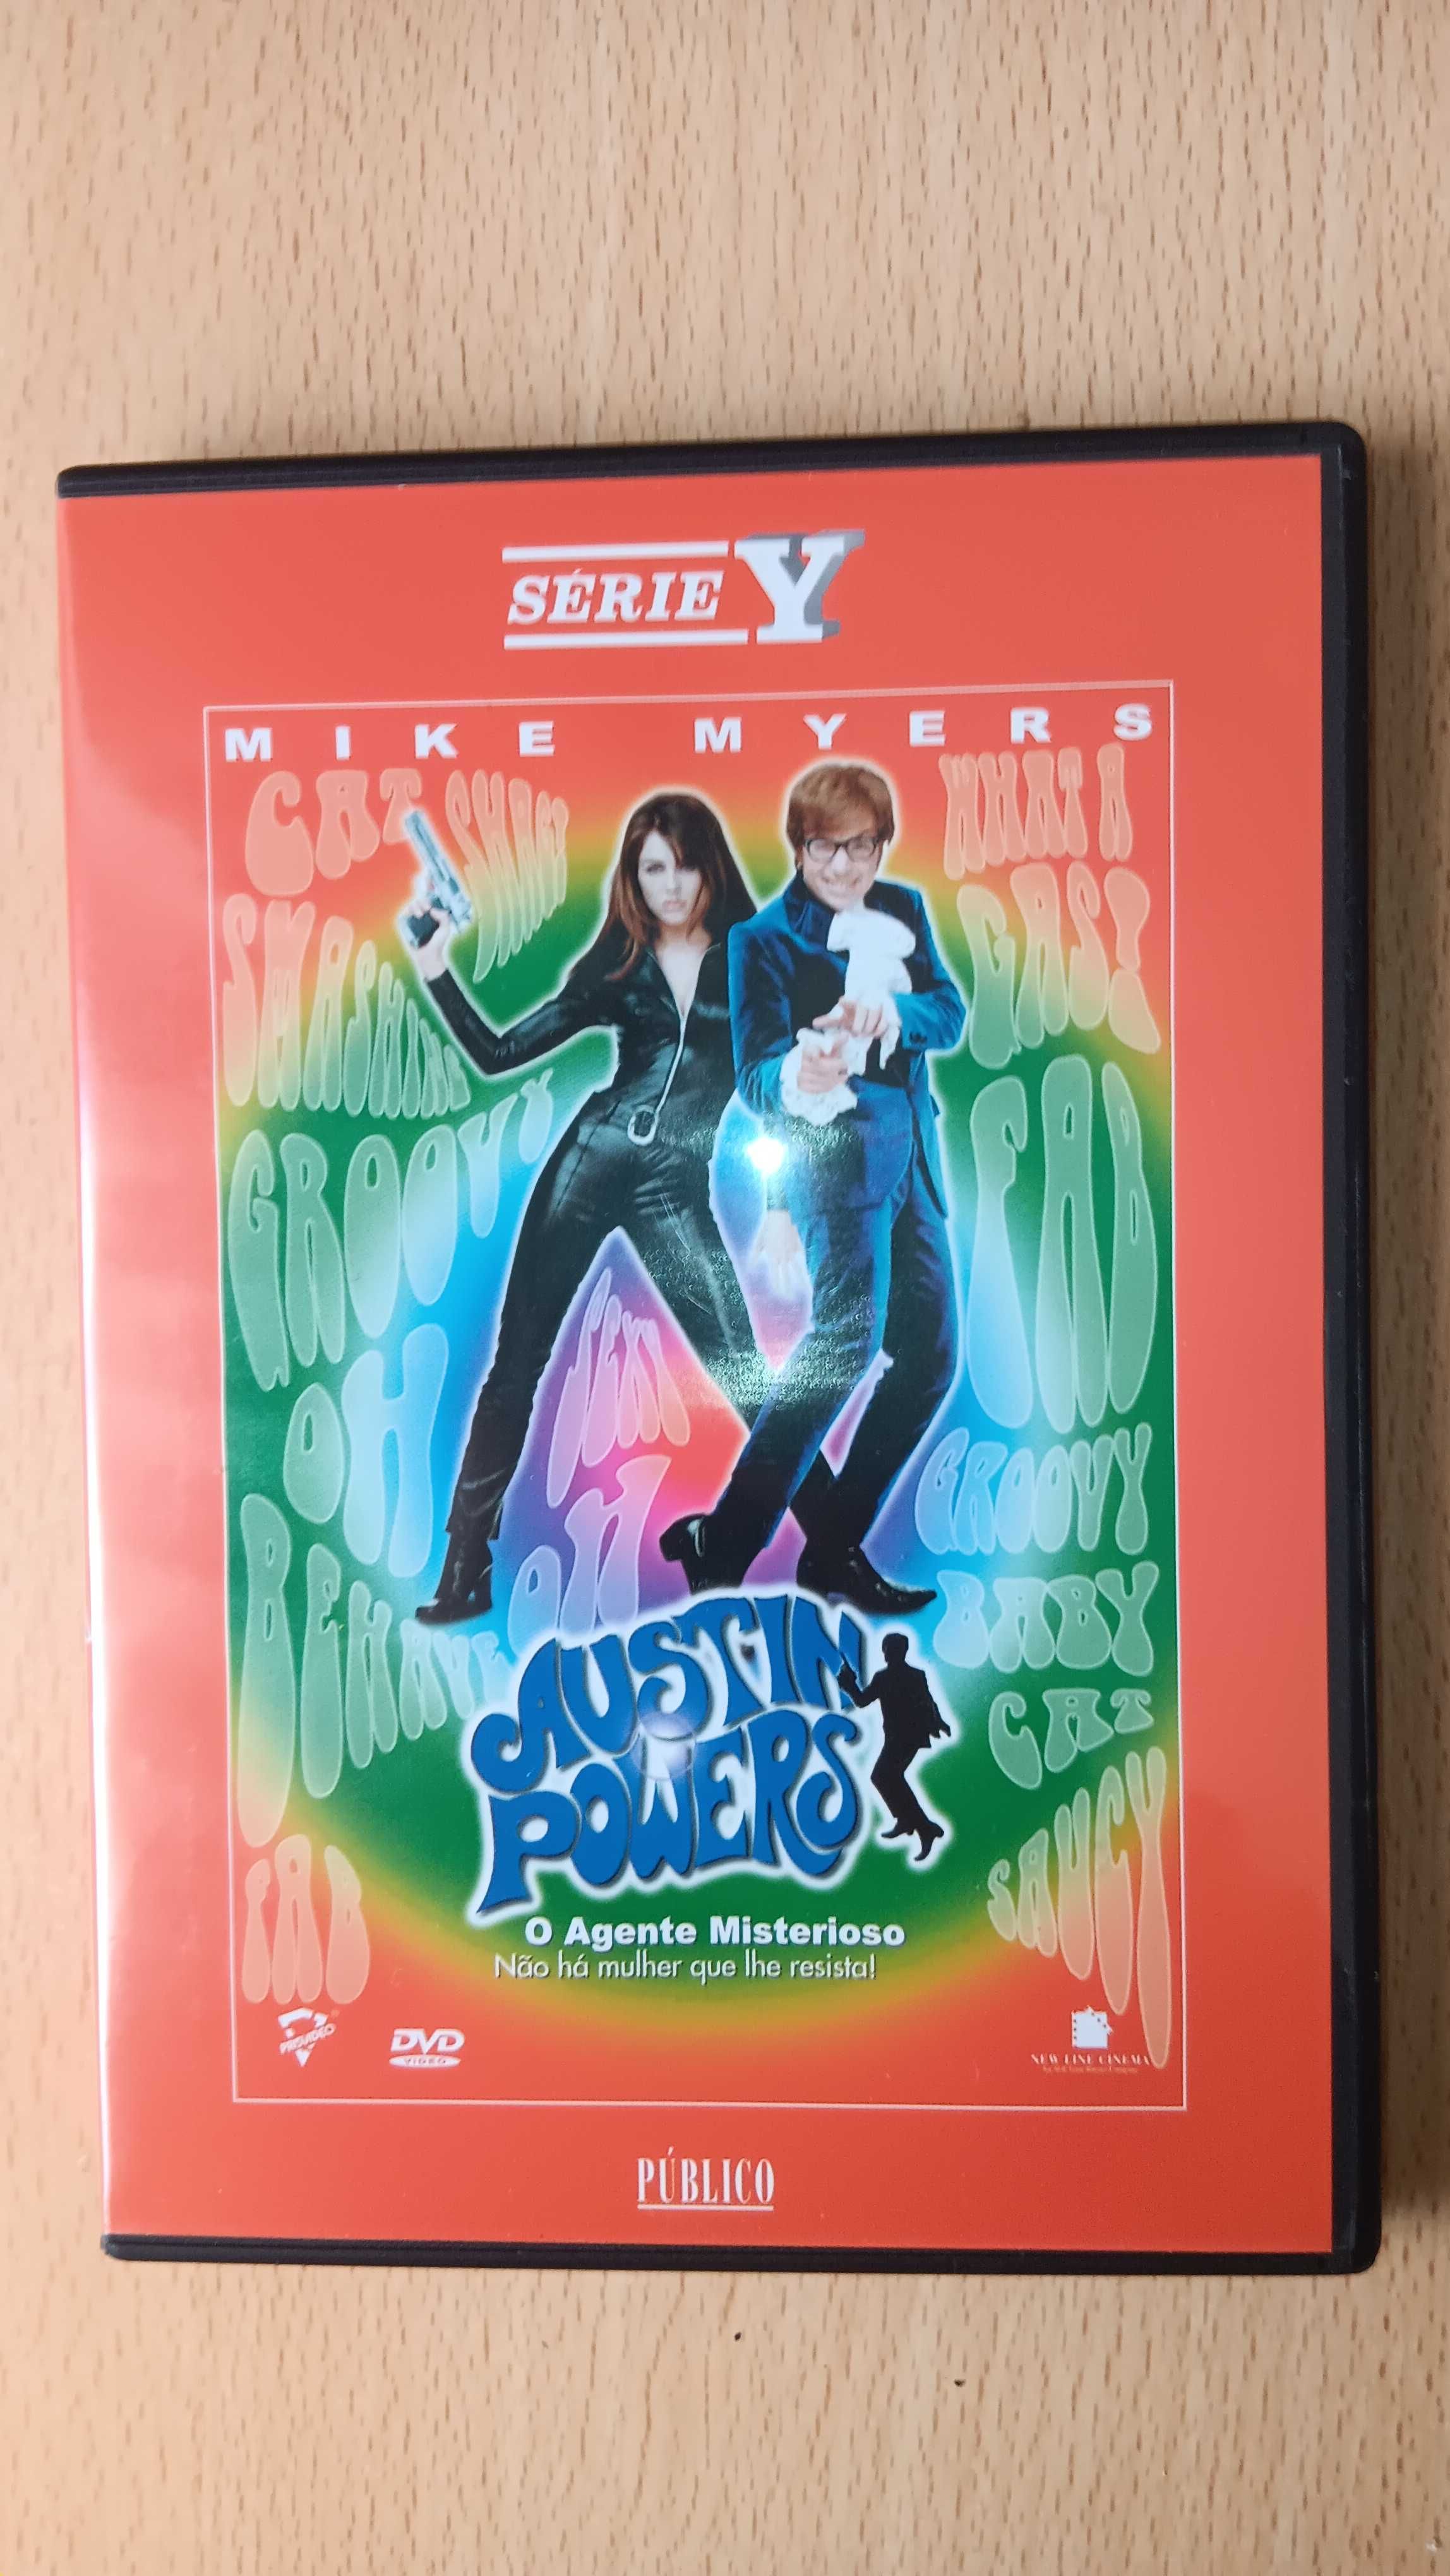 Filme em DVD "Austin Powers o Agente Misterioso"